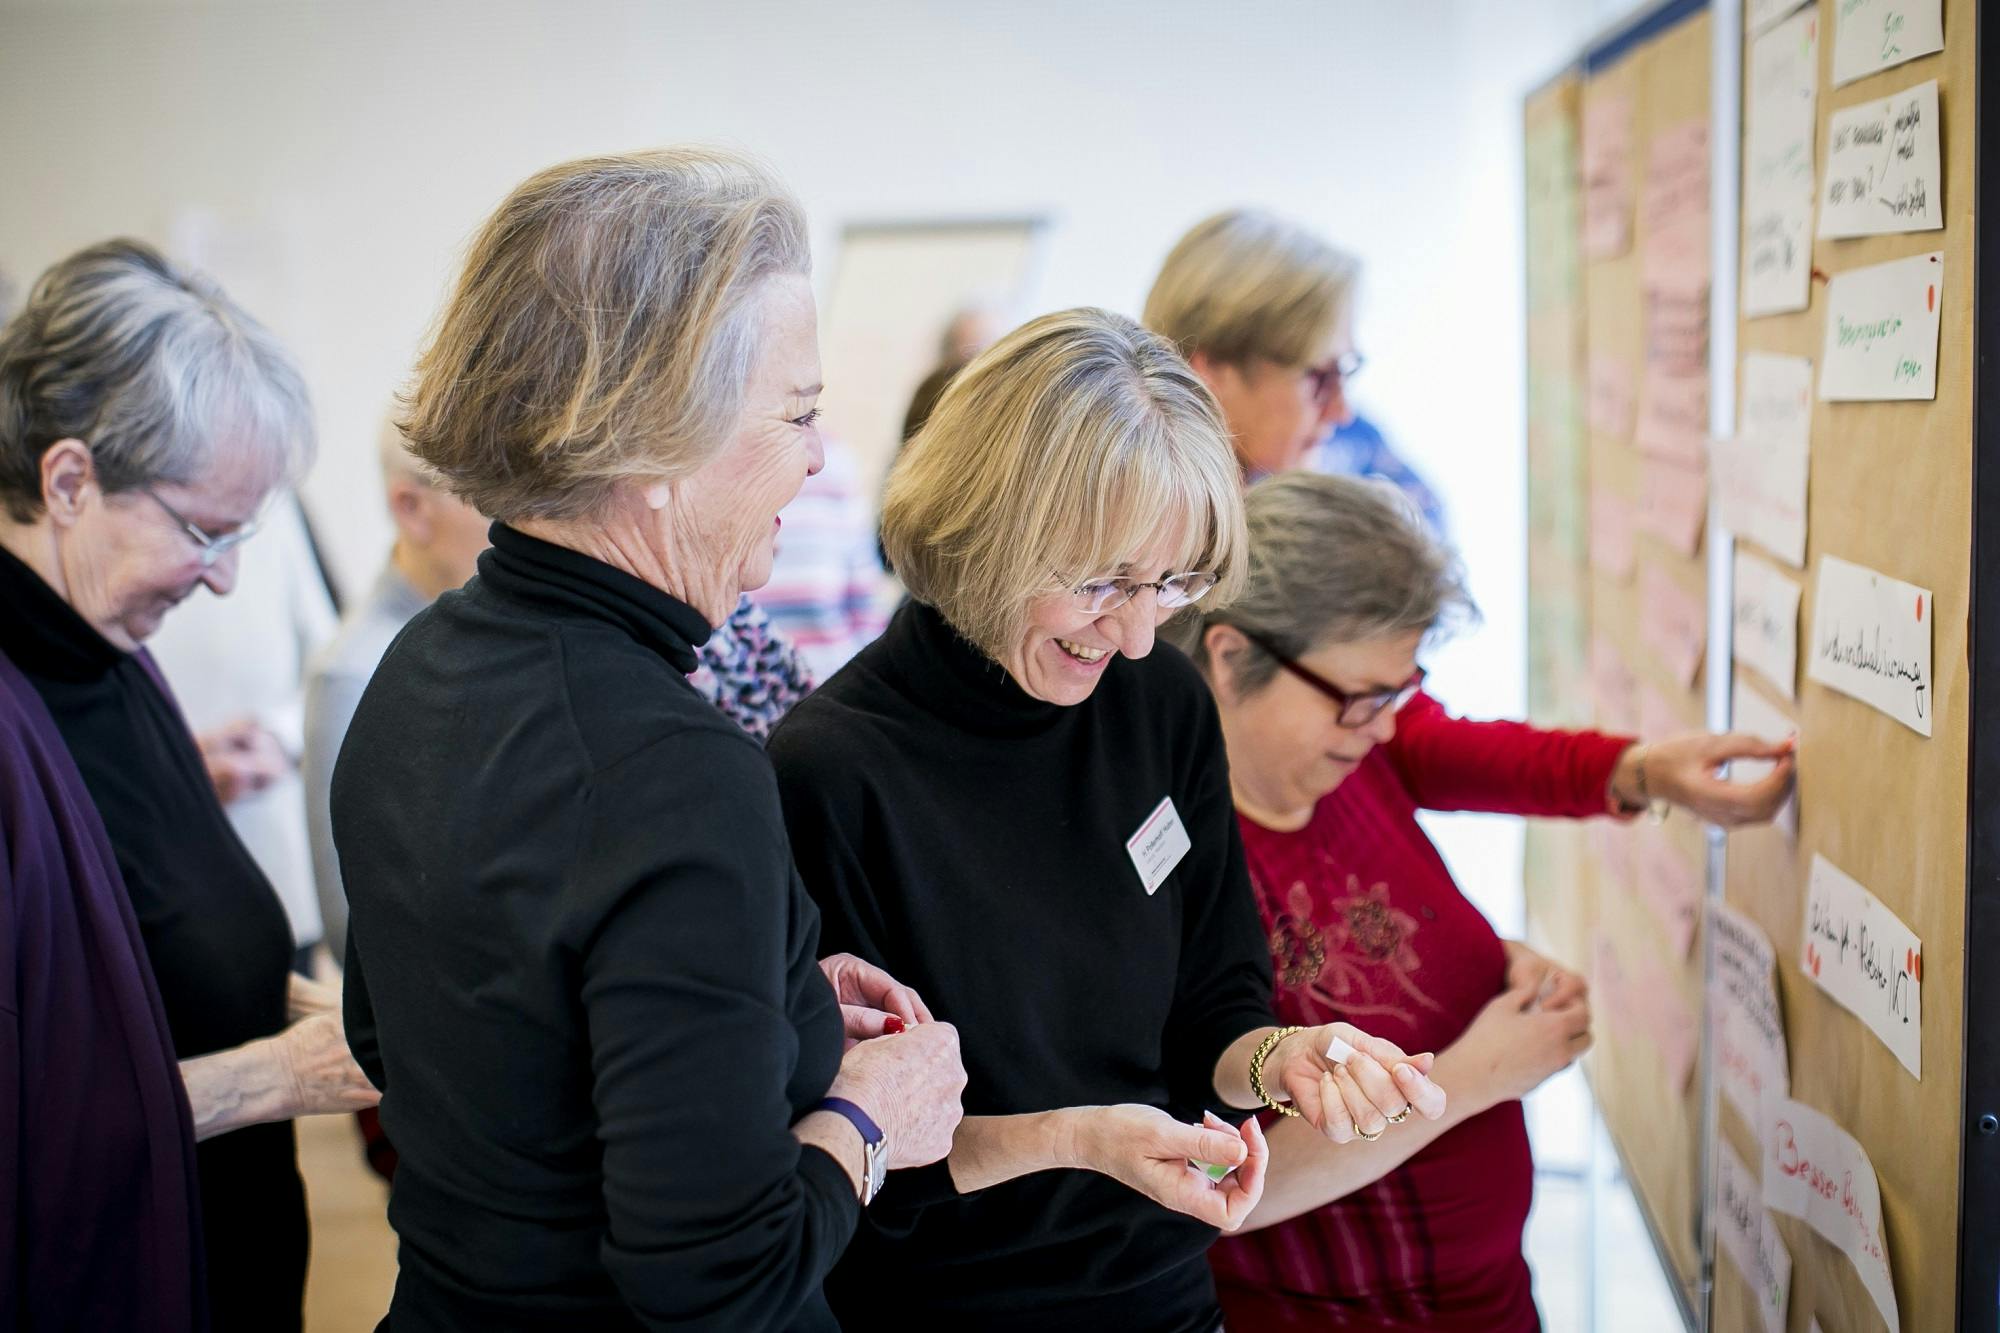 Gruppe älterer Frauen, die gemeinsam lachen und auf einer Veranstaltung scheinbar aktiv eine Wandpräsentation betrachten.